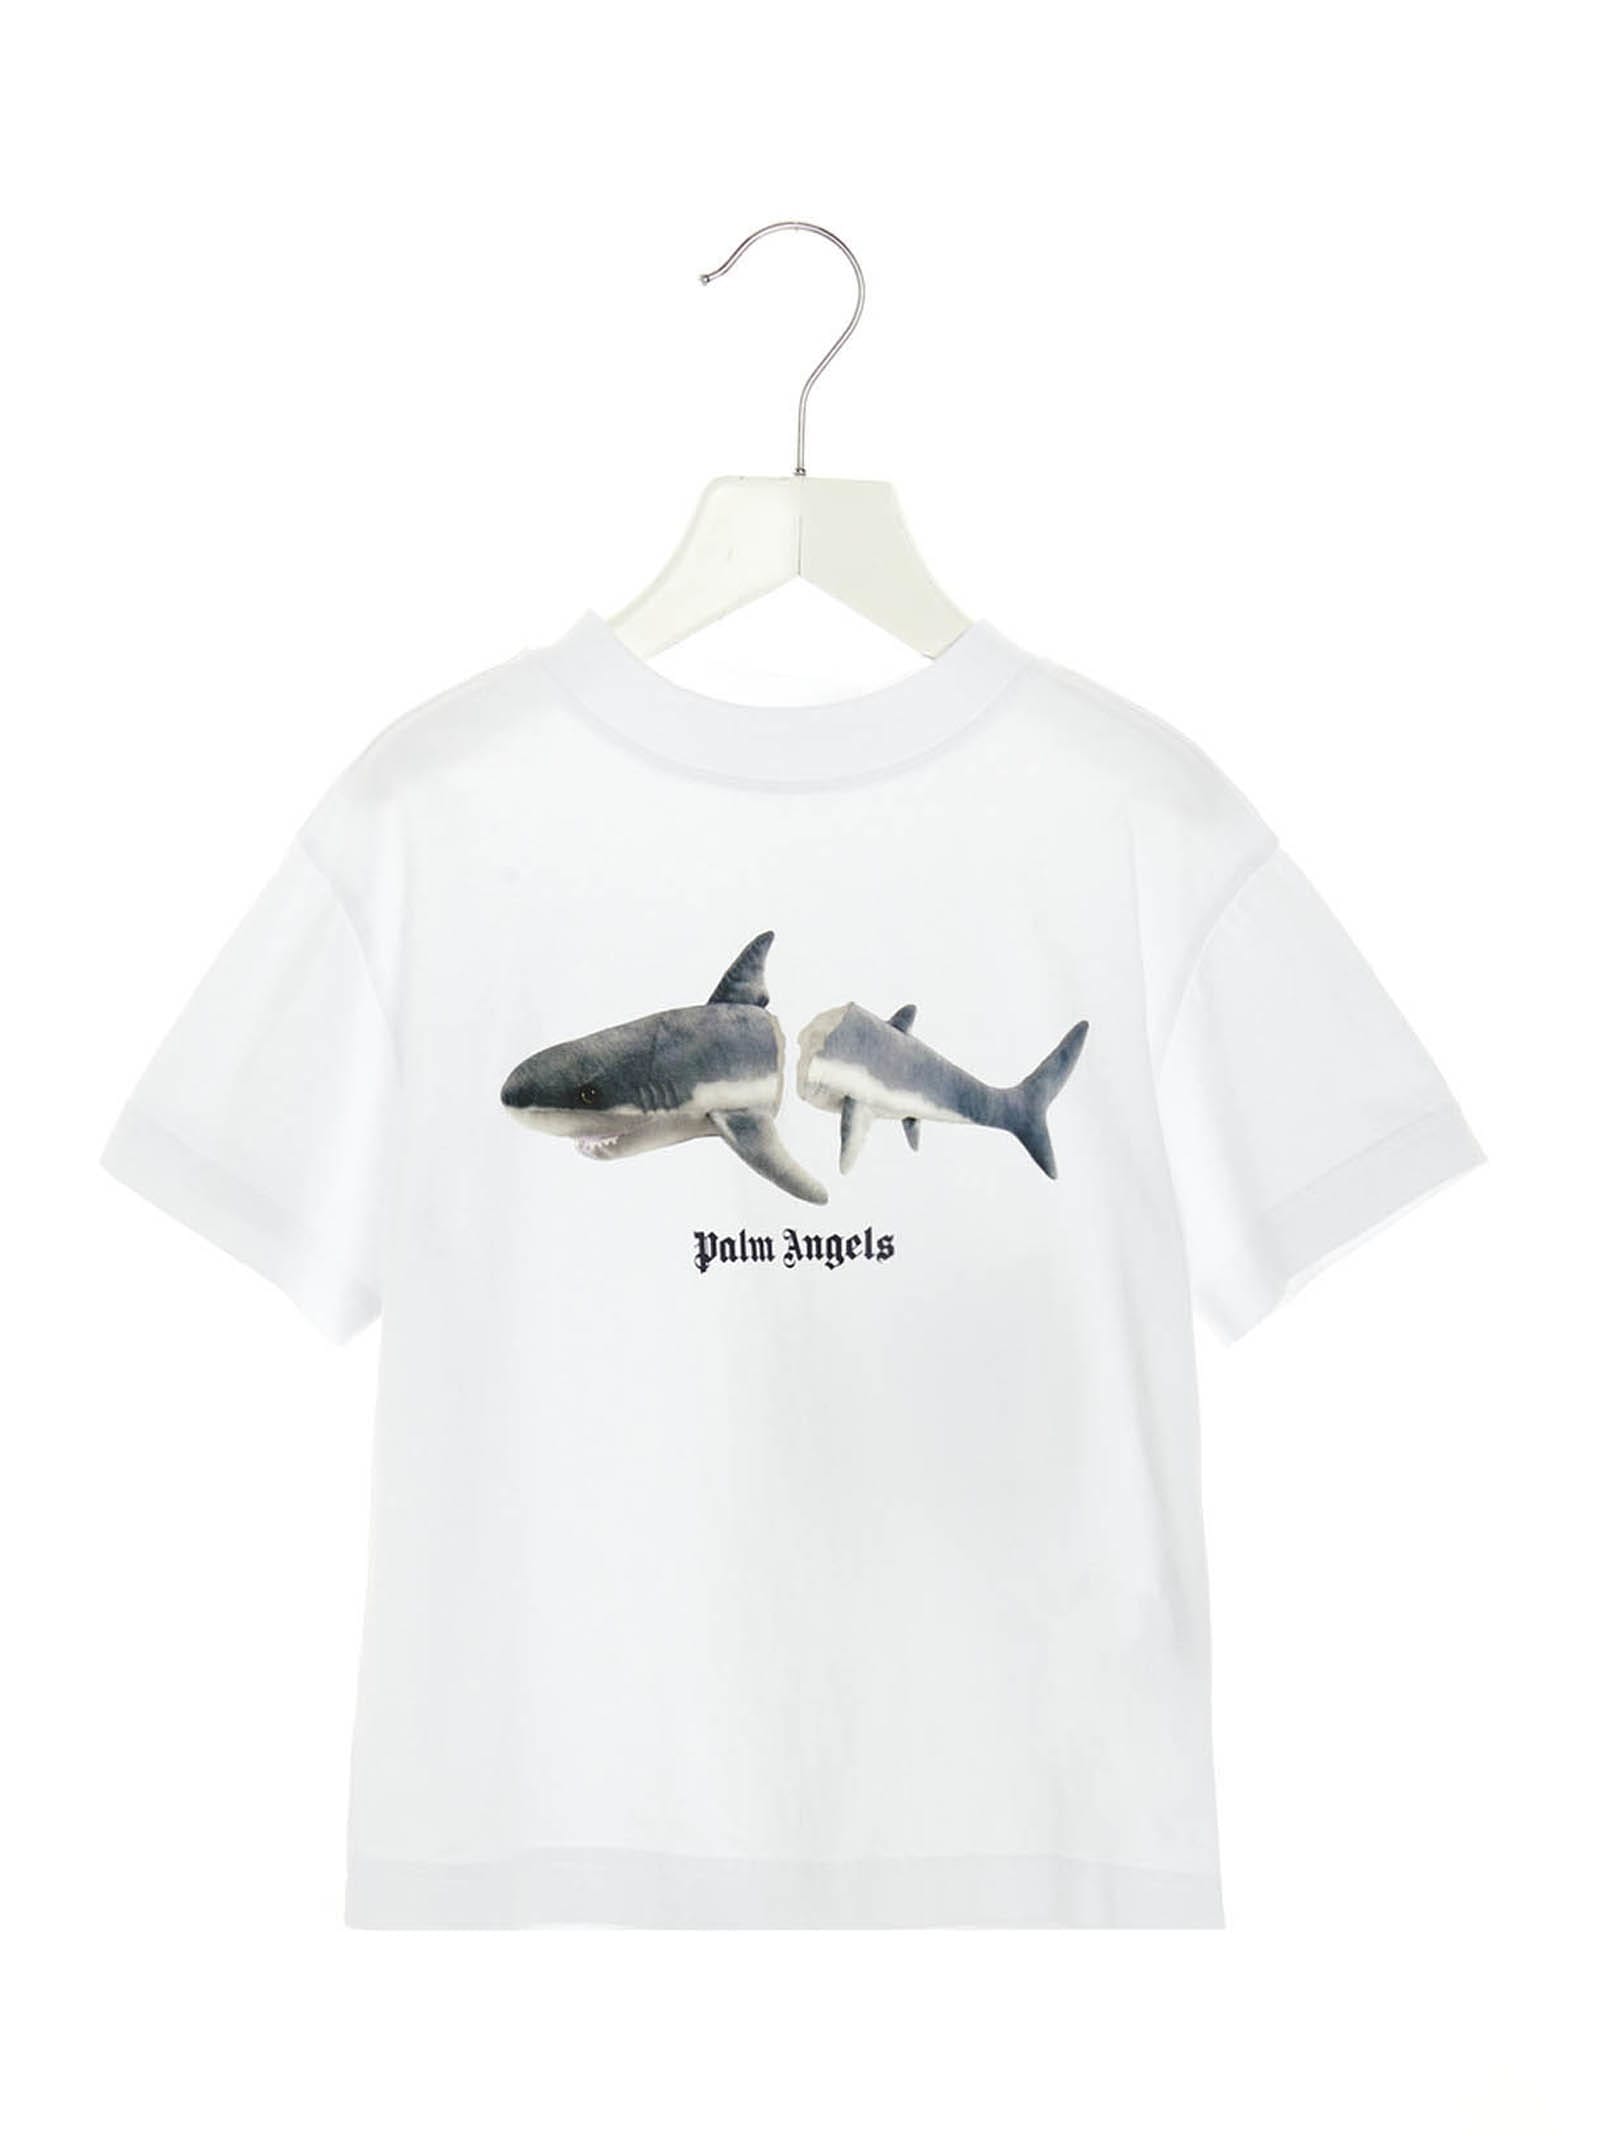 Palm Angels shark T-shirt